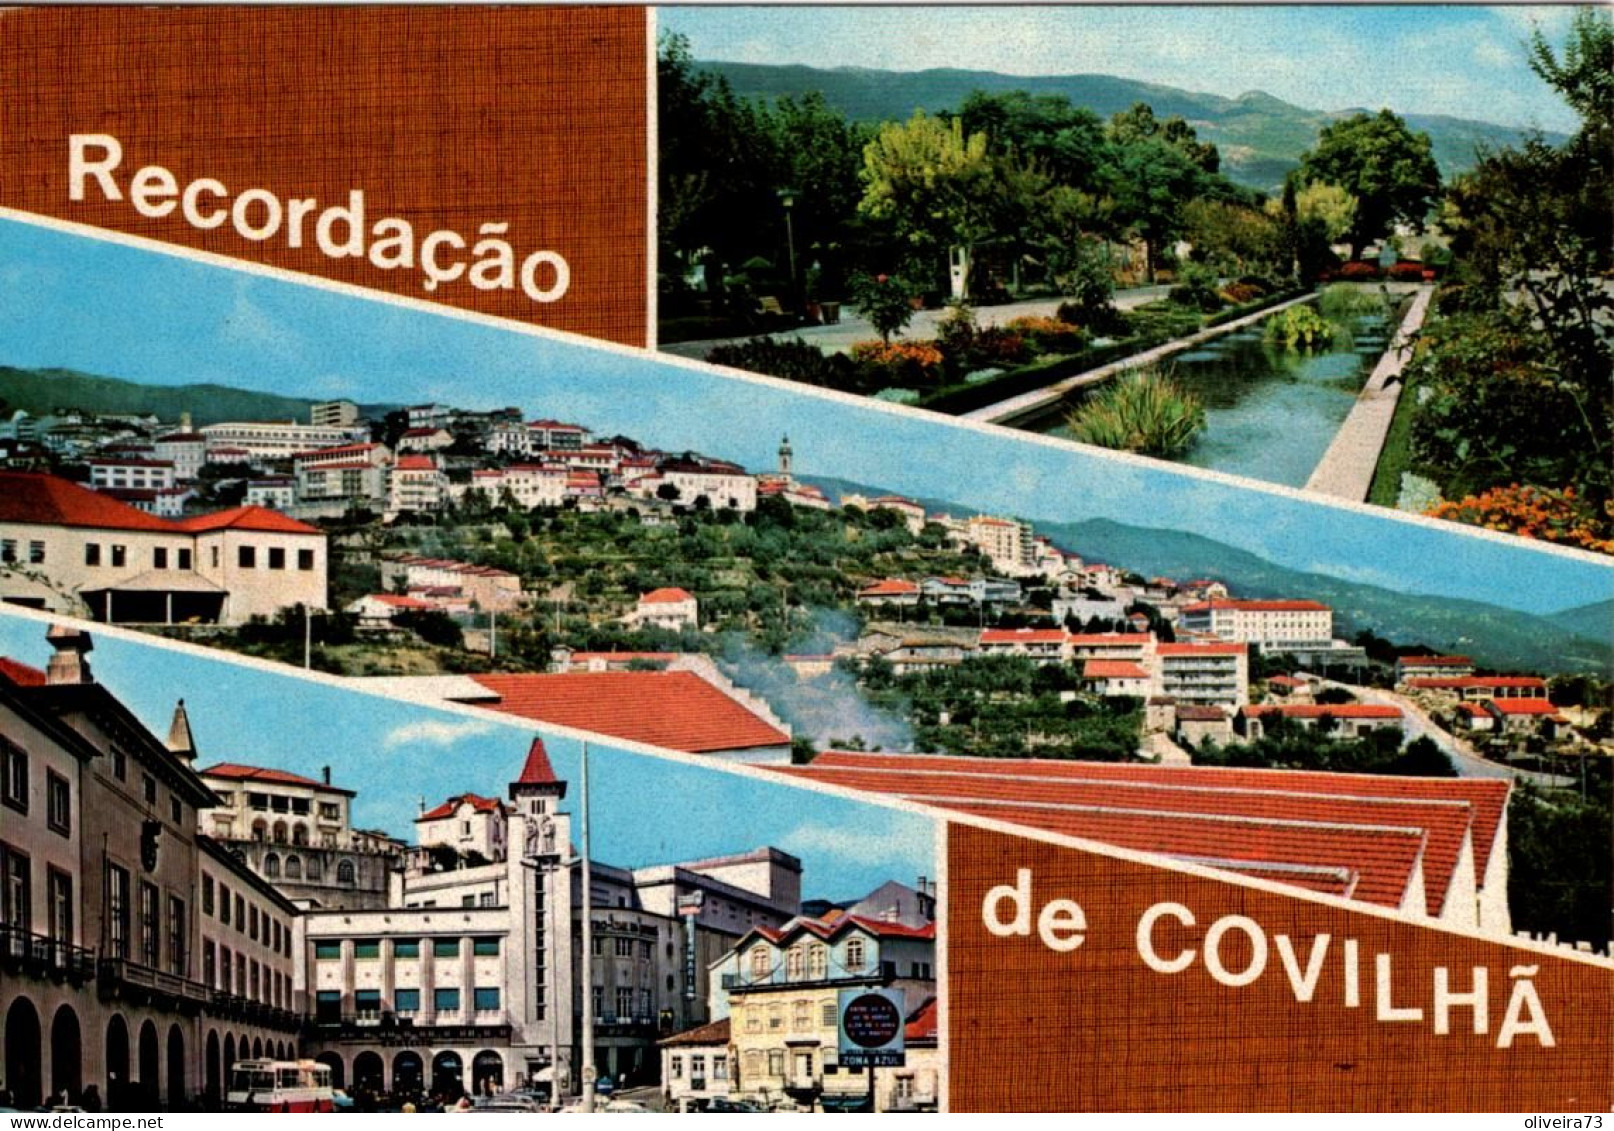 COVILHÃ - RECORDAÇÃO - PORTUGAL - Castelo Branco